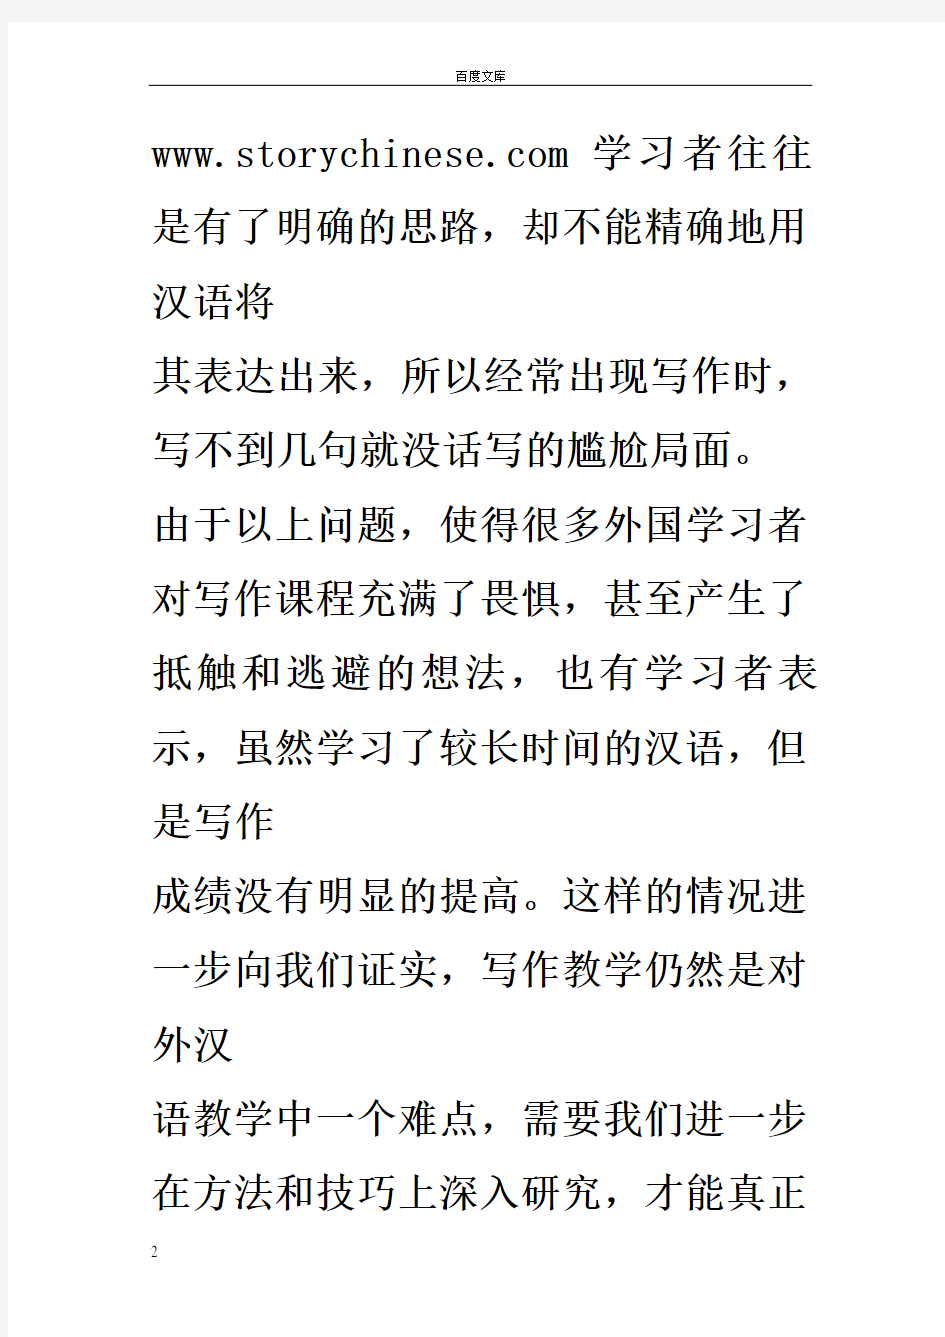 对外汉语写作教学的研究